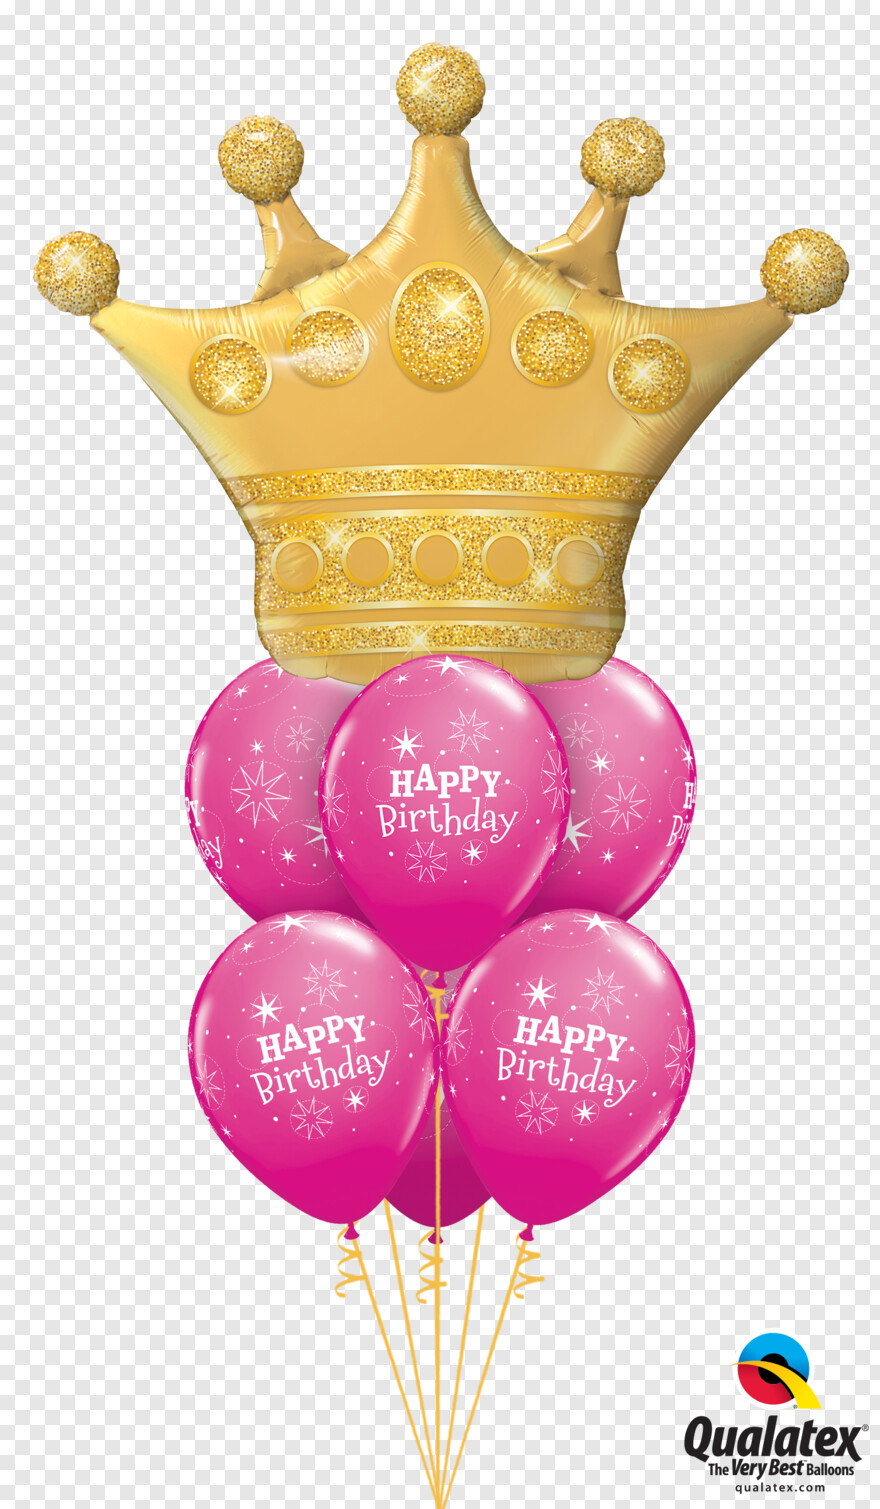  Happy Birthday Hat, Leaf Crown, Golden Gate Bridge, Golden Retriever, Golden Crown, Birthday Crown